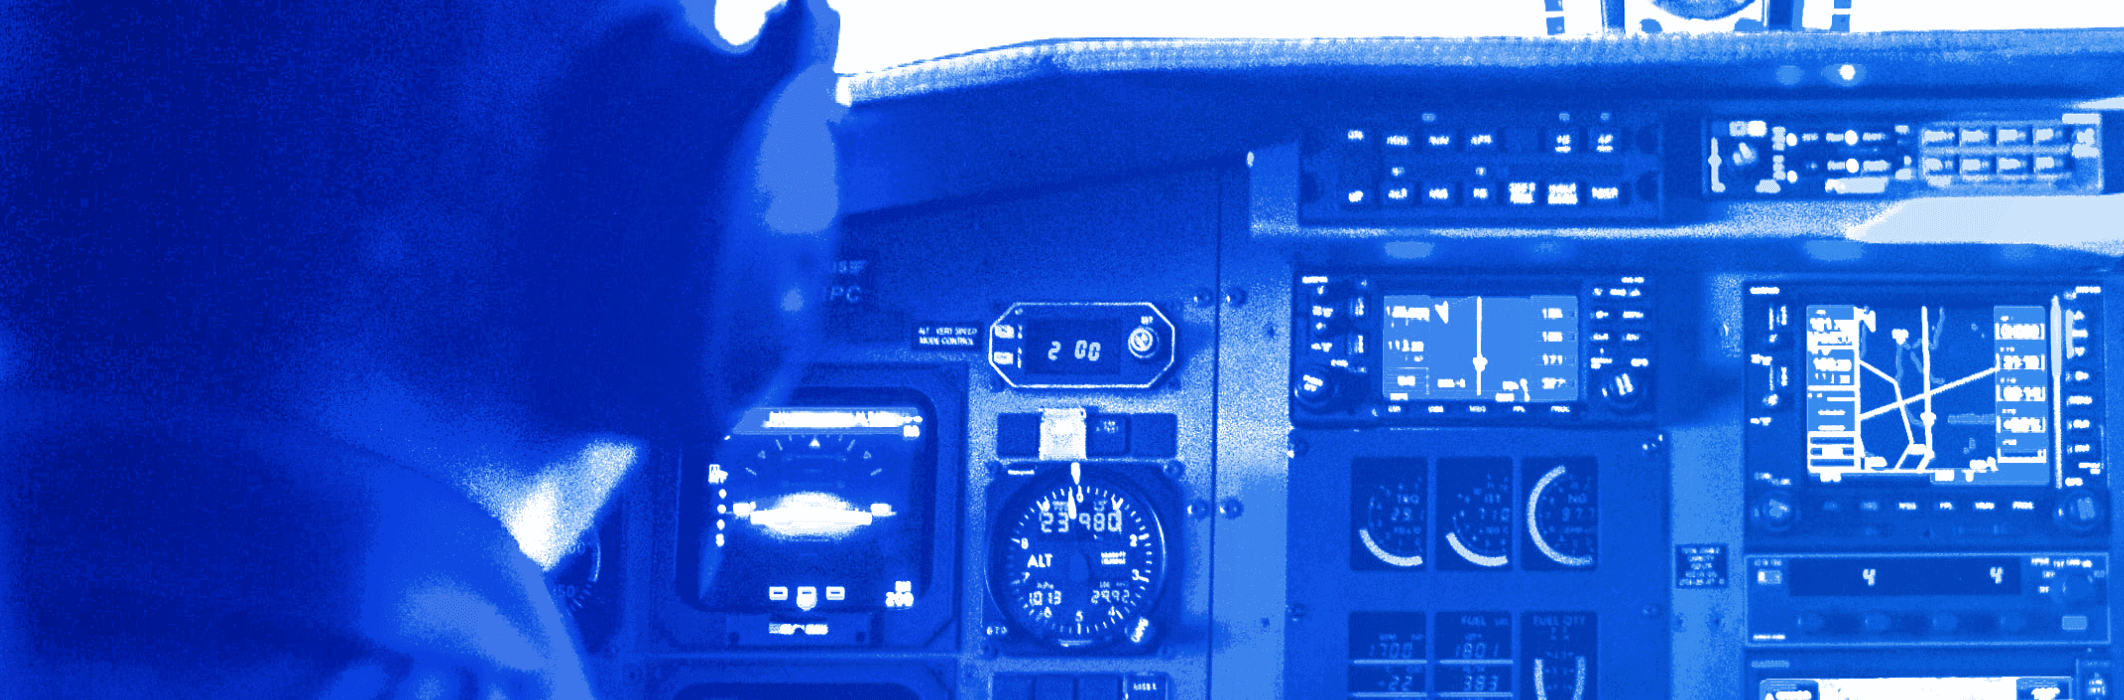 Pilots Cockpit